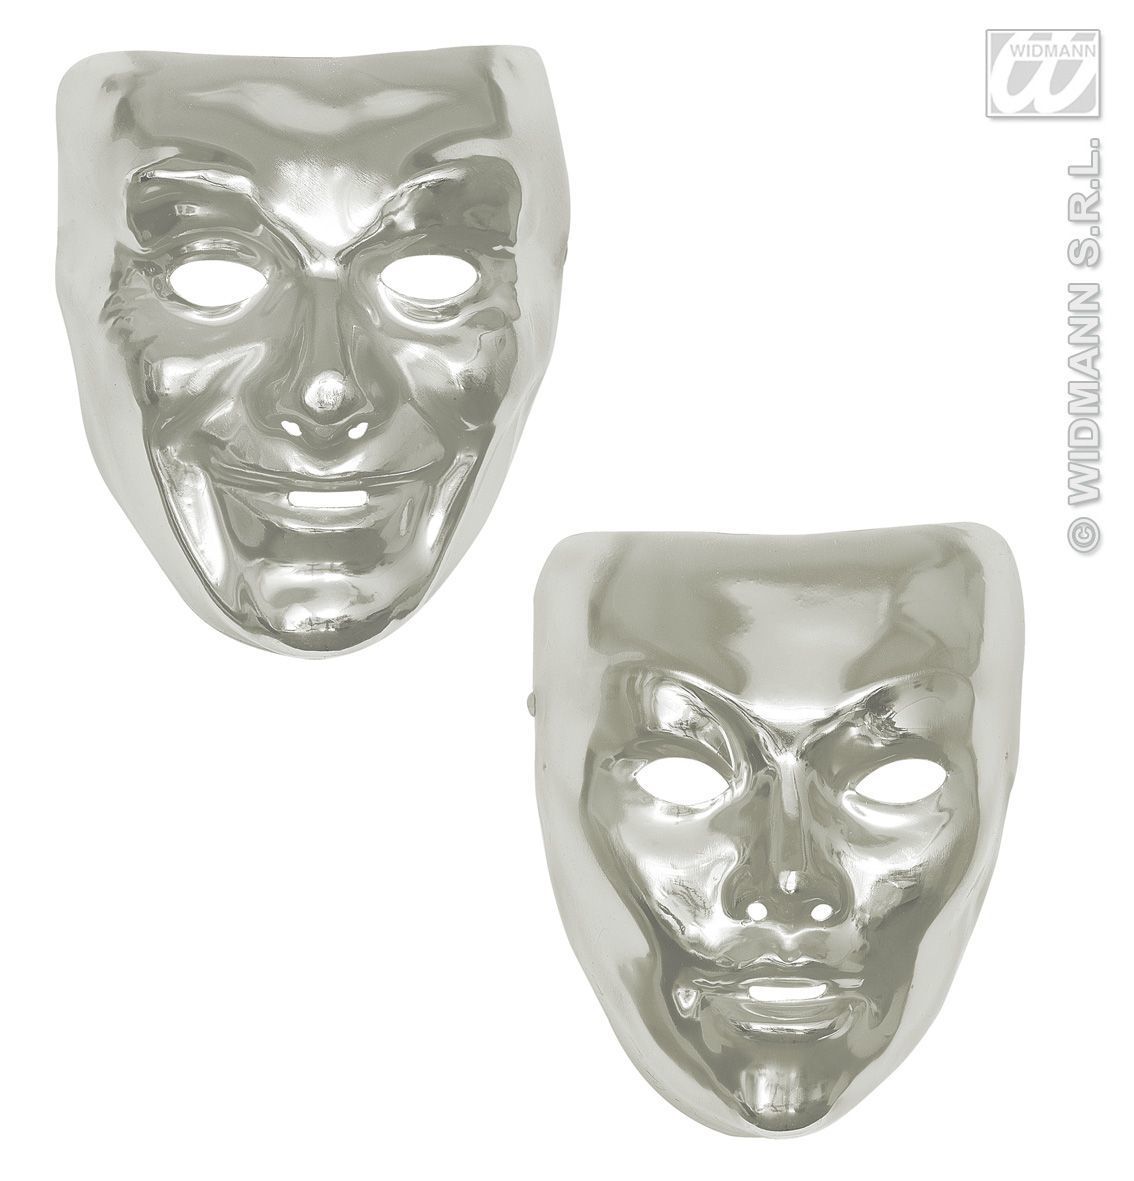 Plastic zilver masker